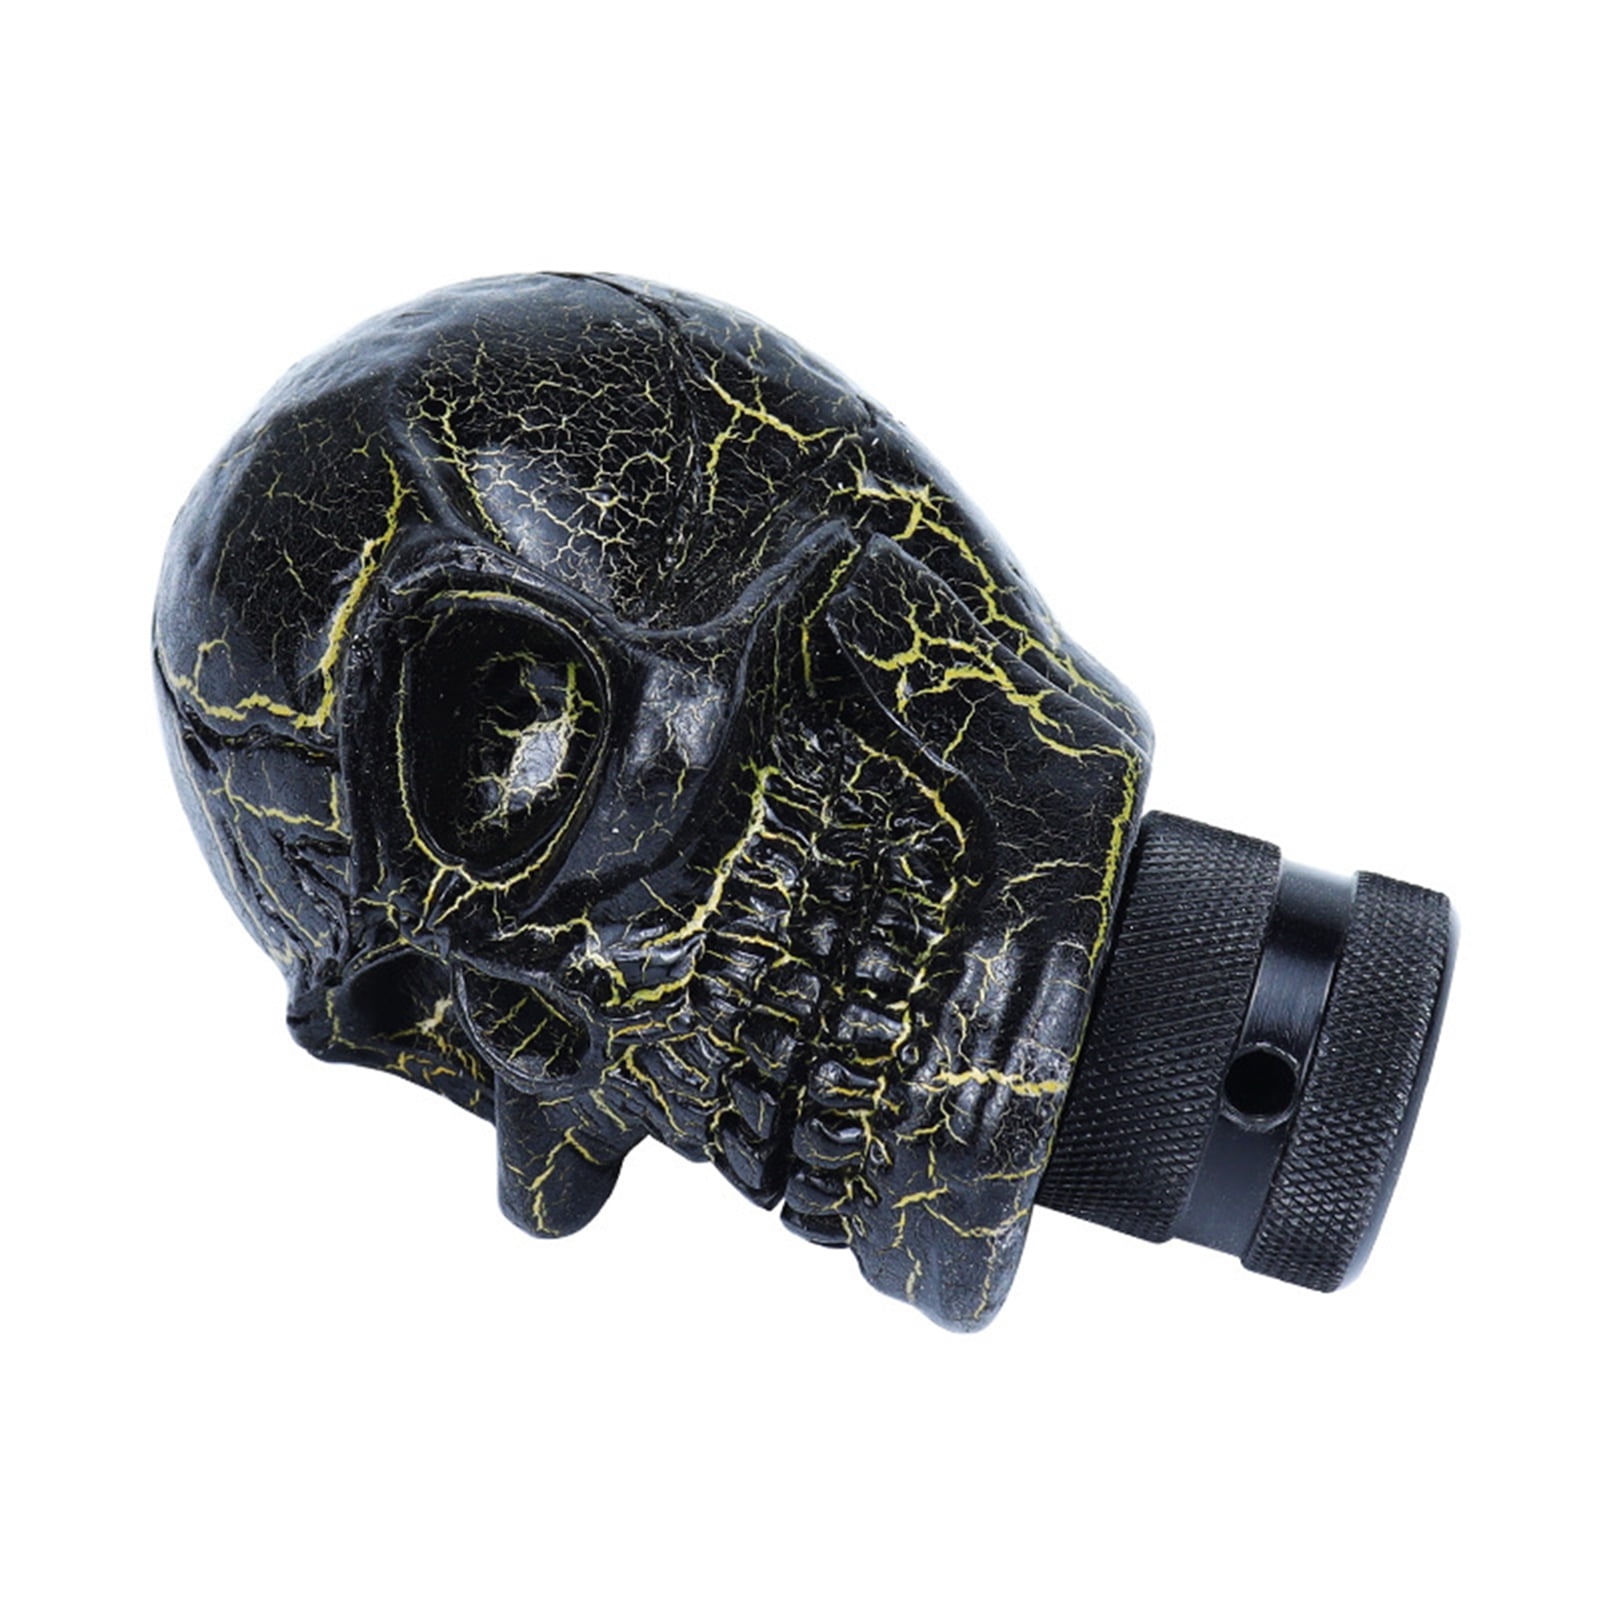 Upgrade Ride An Alien themed Skull Gear Shift Knob! - Temu